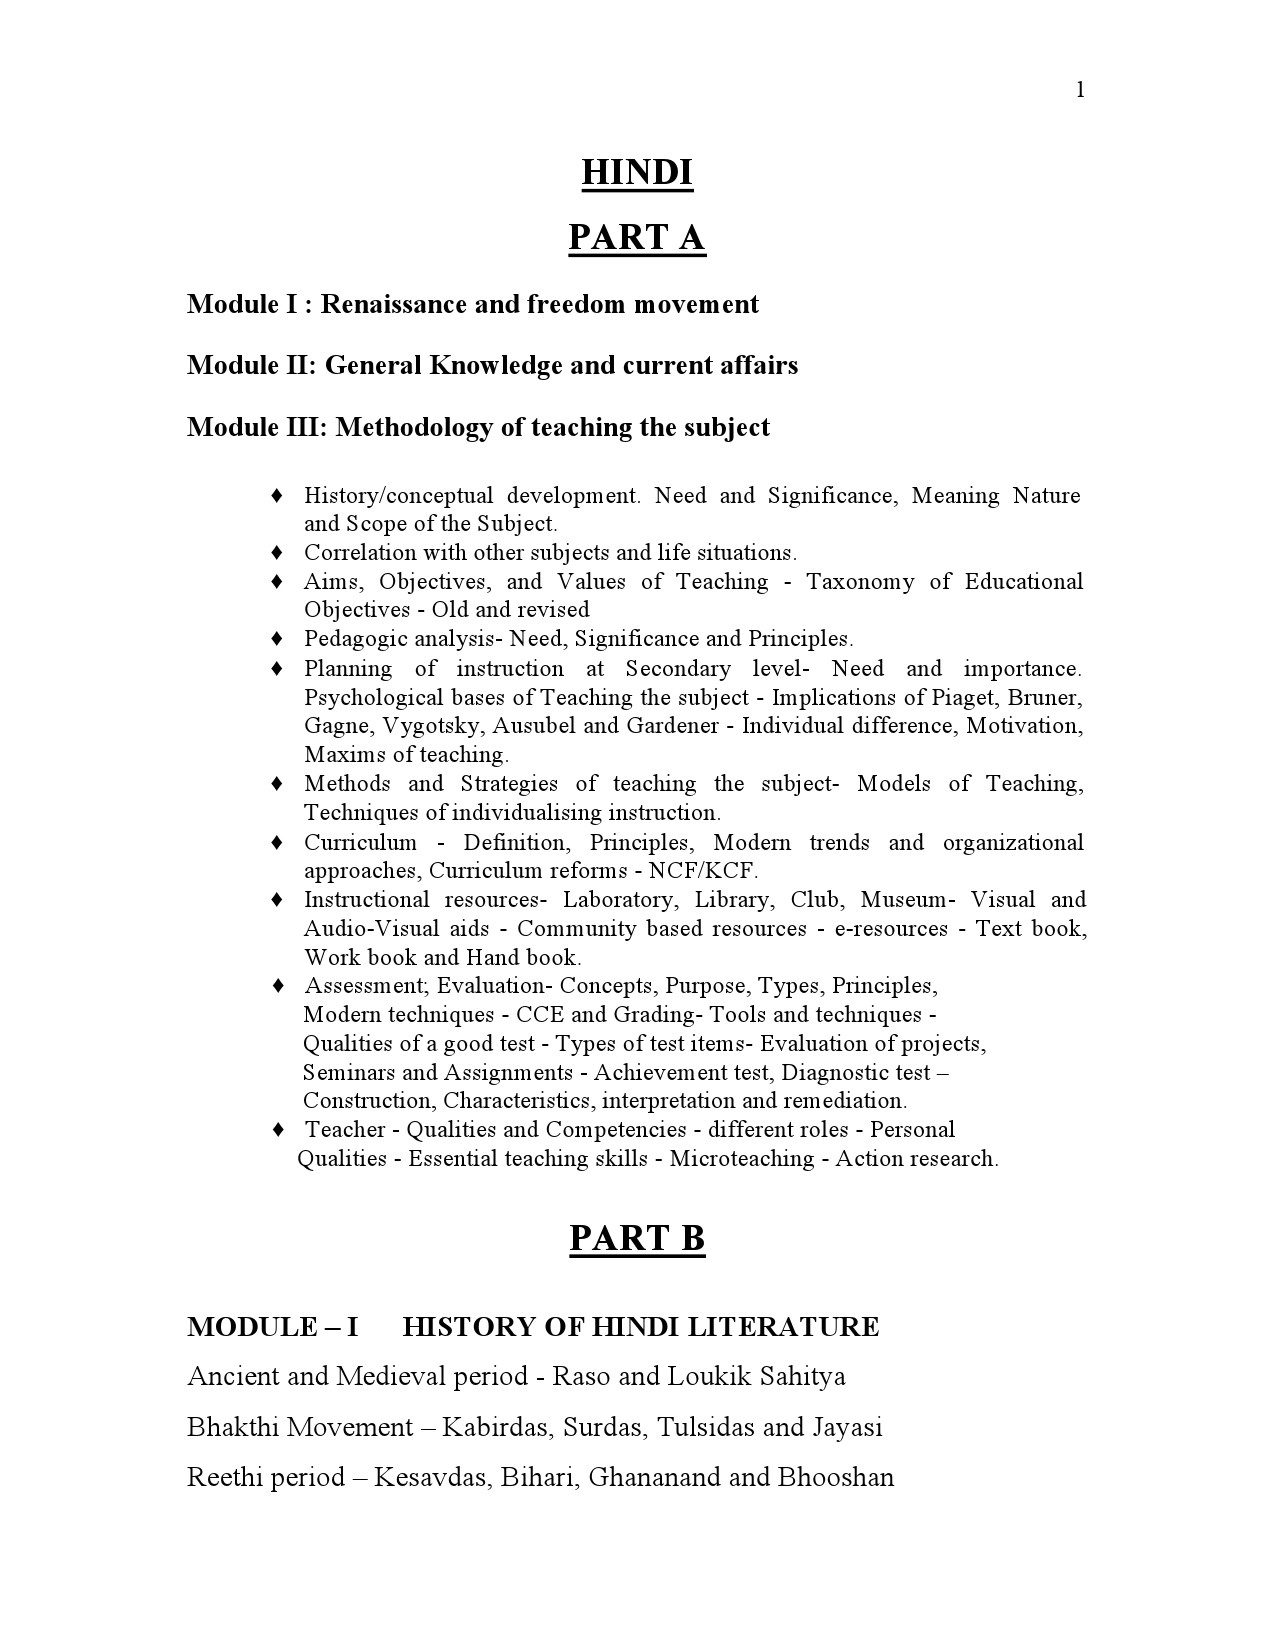 High School Assistant Hindi Part A Kerala Examination Syllabus 2021 - Notification Image 1